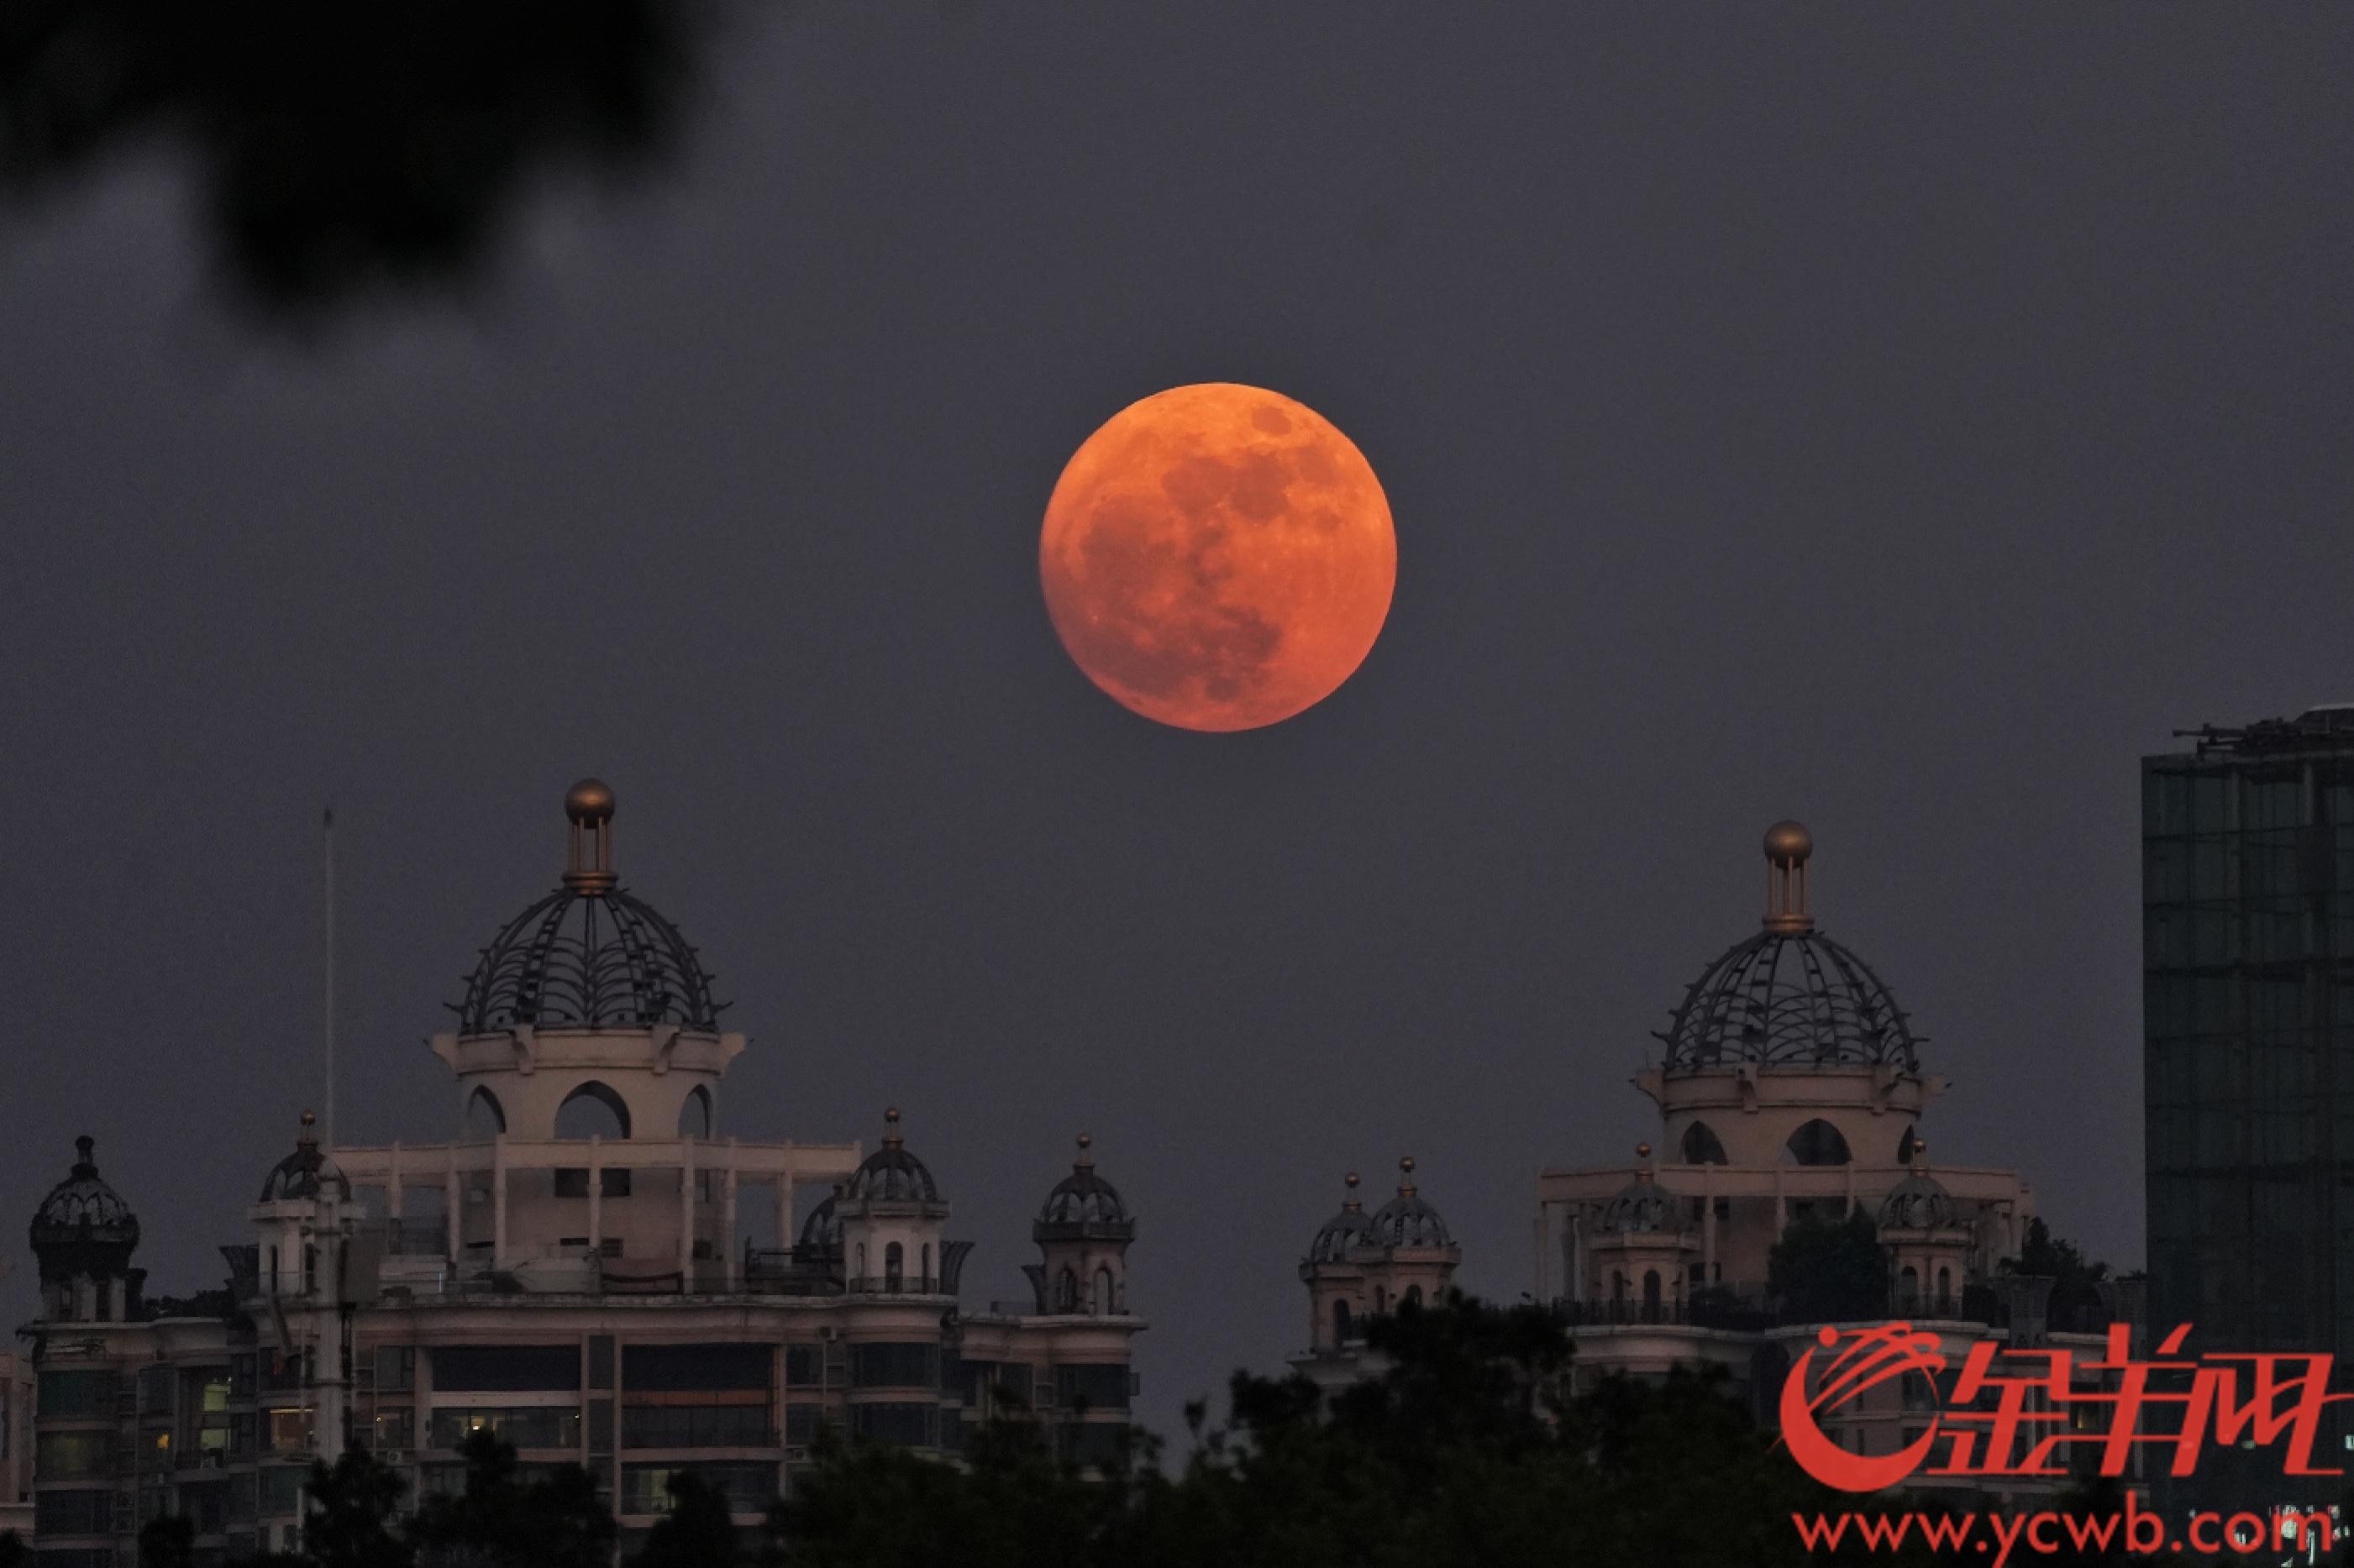 超级月亮7月13日晚虽迟但到,广州市民从天亮追到天黑